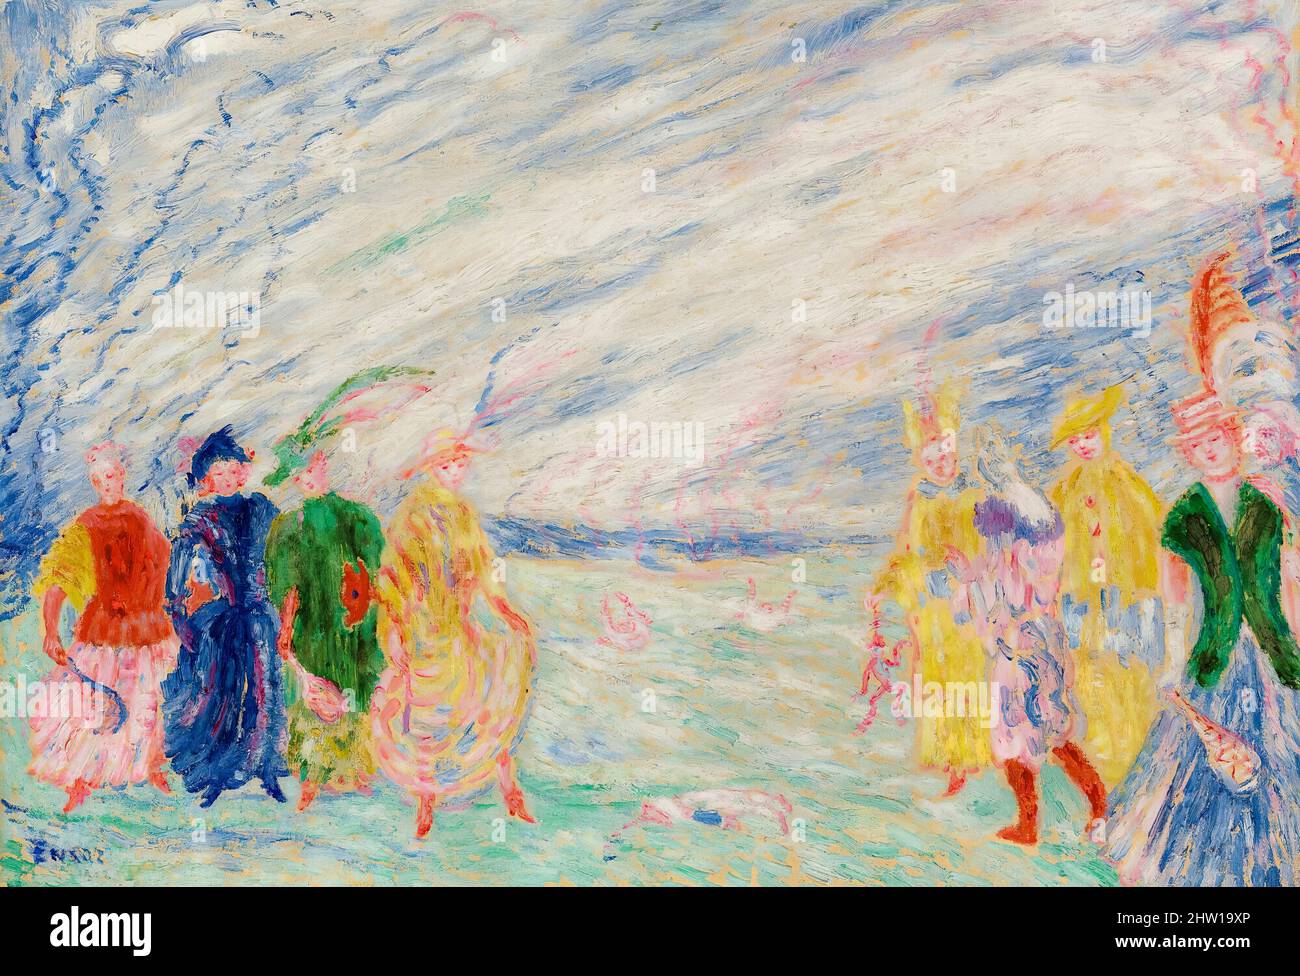 James Ensor, la rencontre, peinture à l'huile sur toile, 1912 Banque D'Images